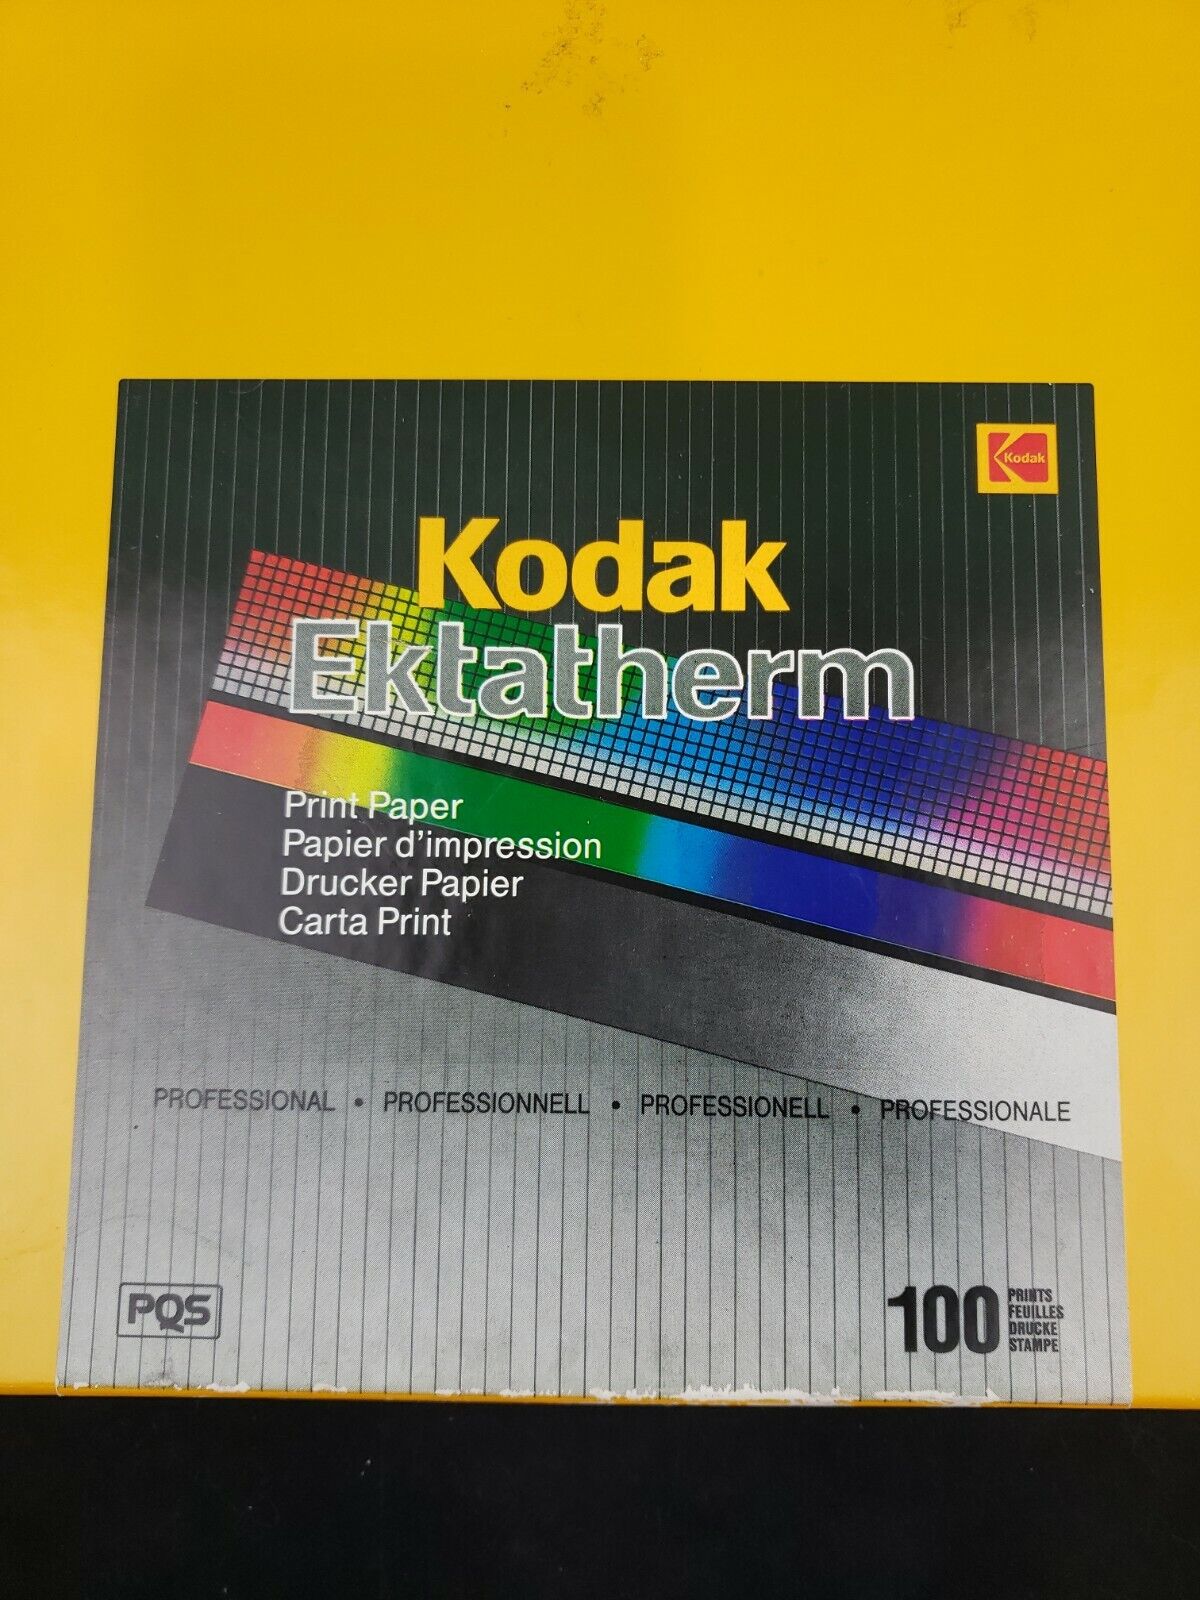 Kodak Print Paper Ektatherm Professional 11 X 11” 100 Sheets New in Box